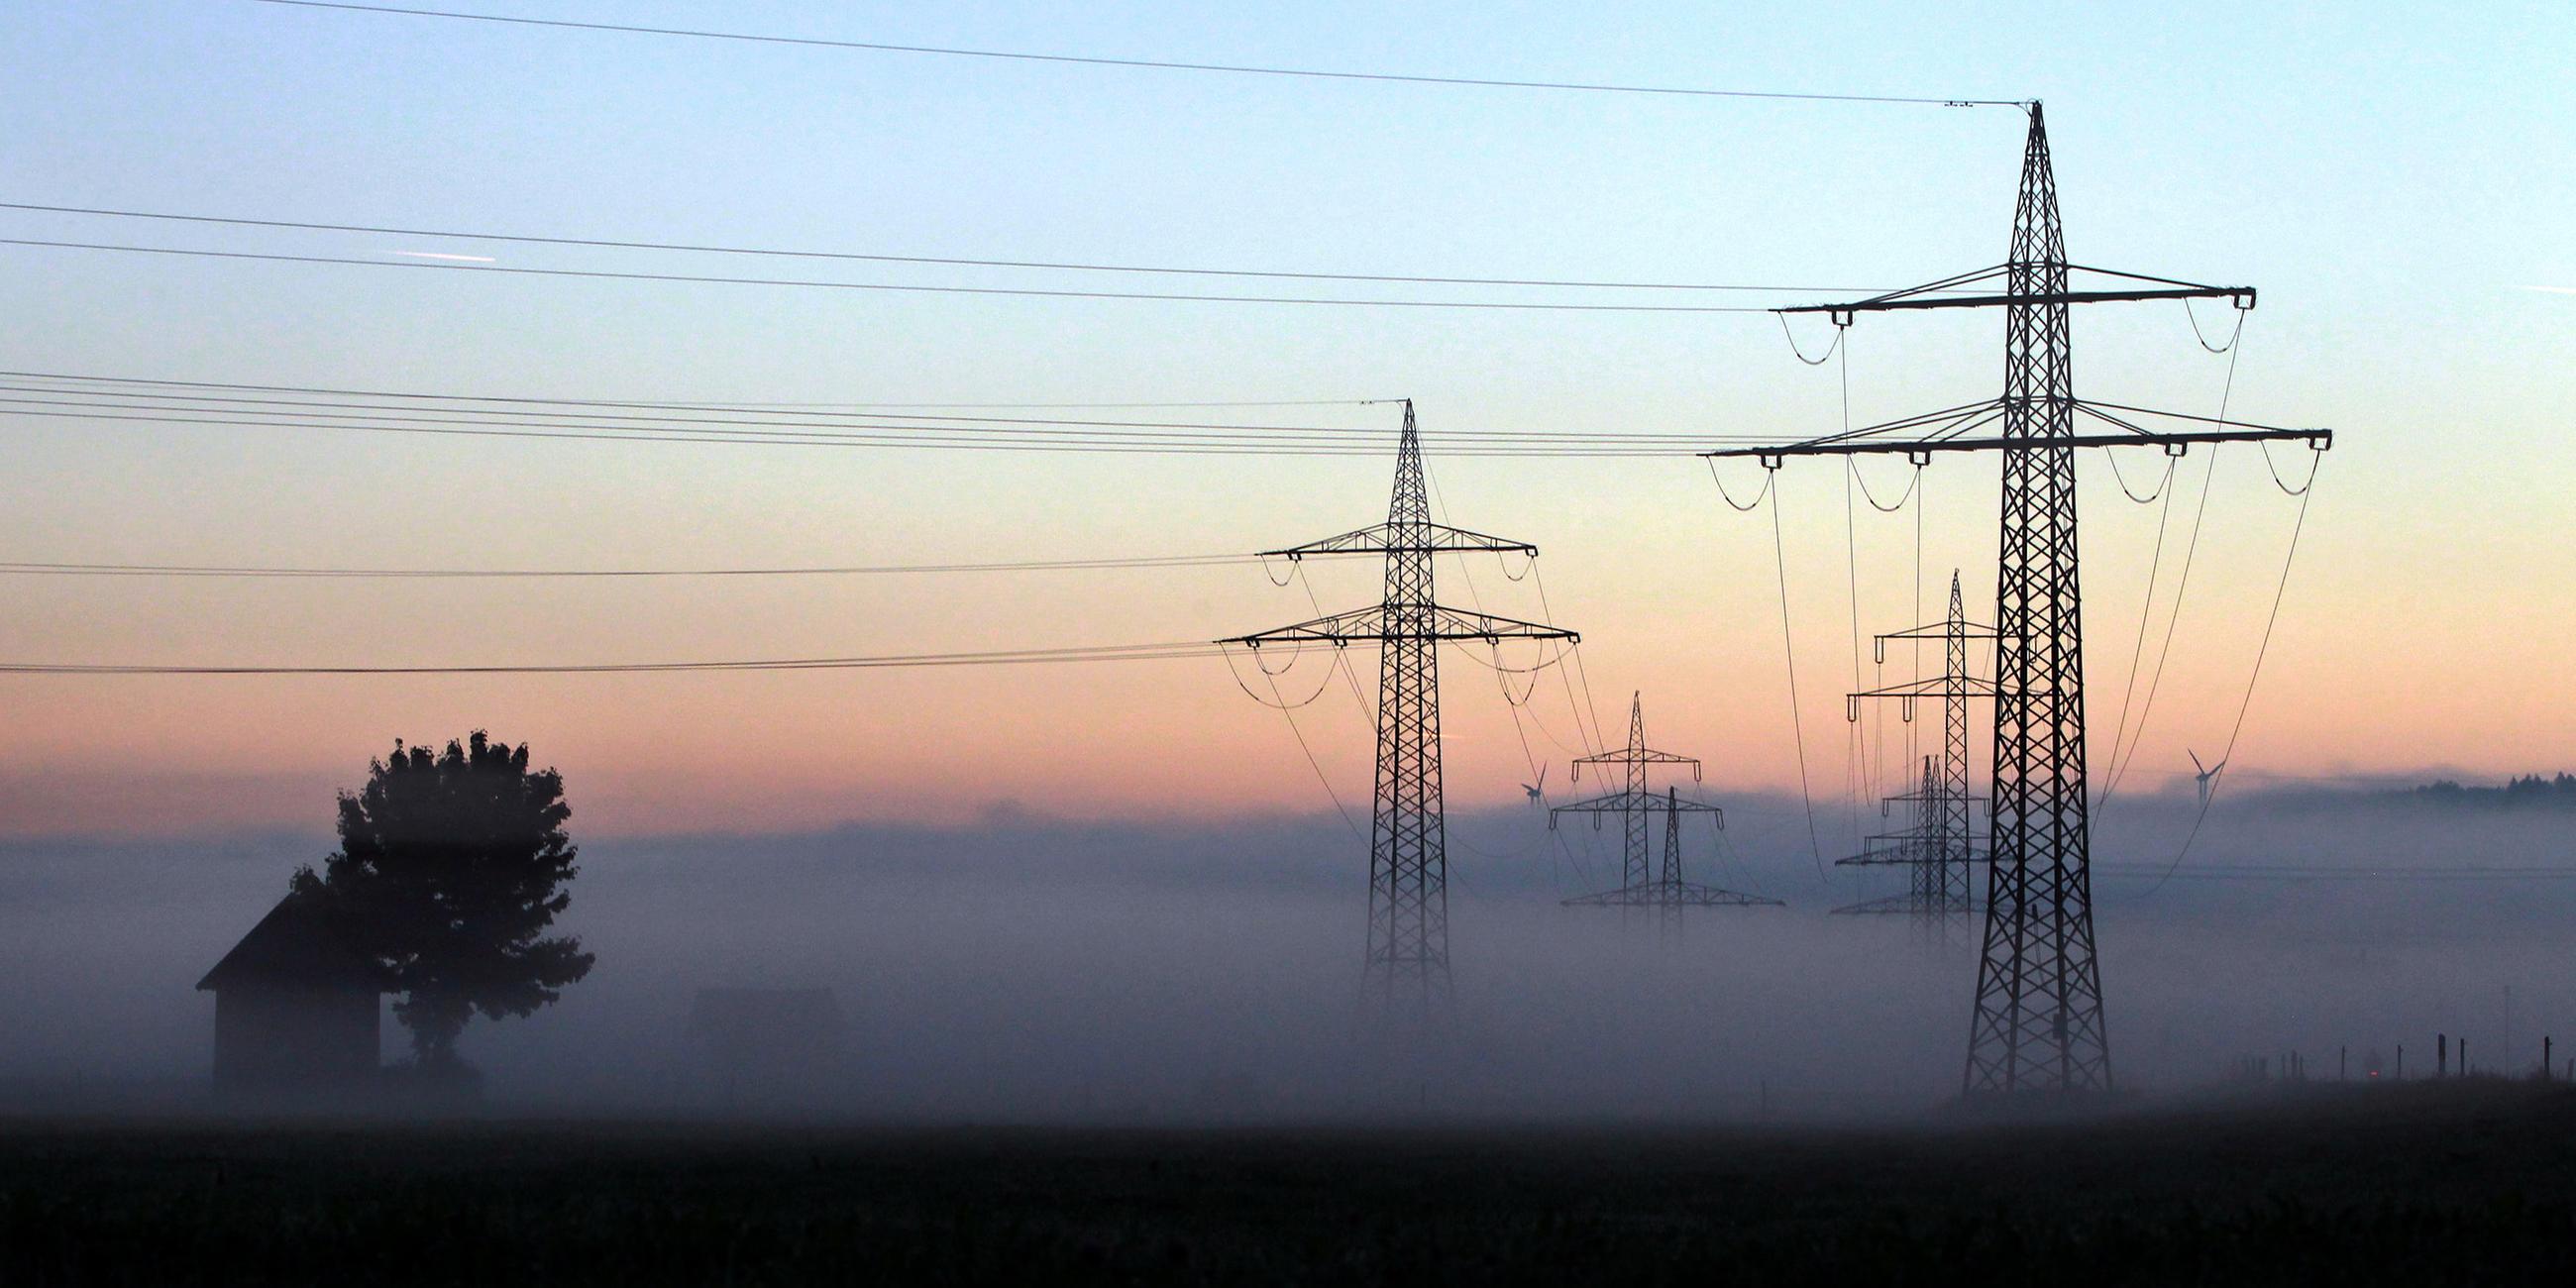 Strommasten stehen am 08.09.2012 bei Ebenhofen (Schwaben) im Morgennebel, aufgenommen am 08.09.2012